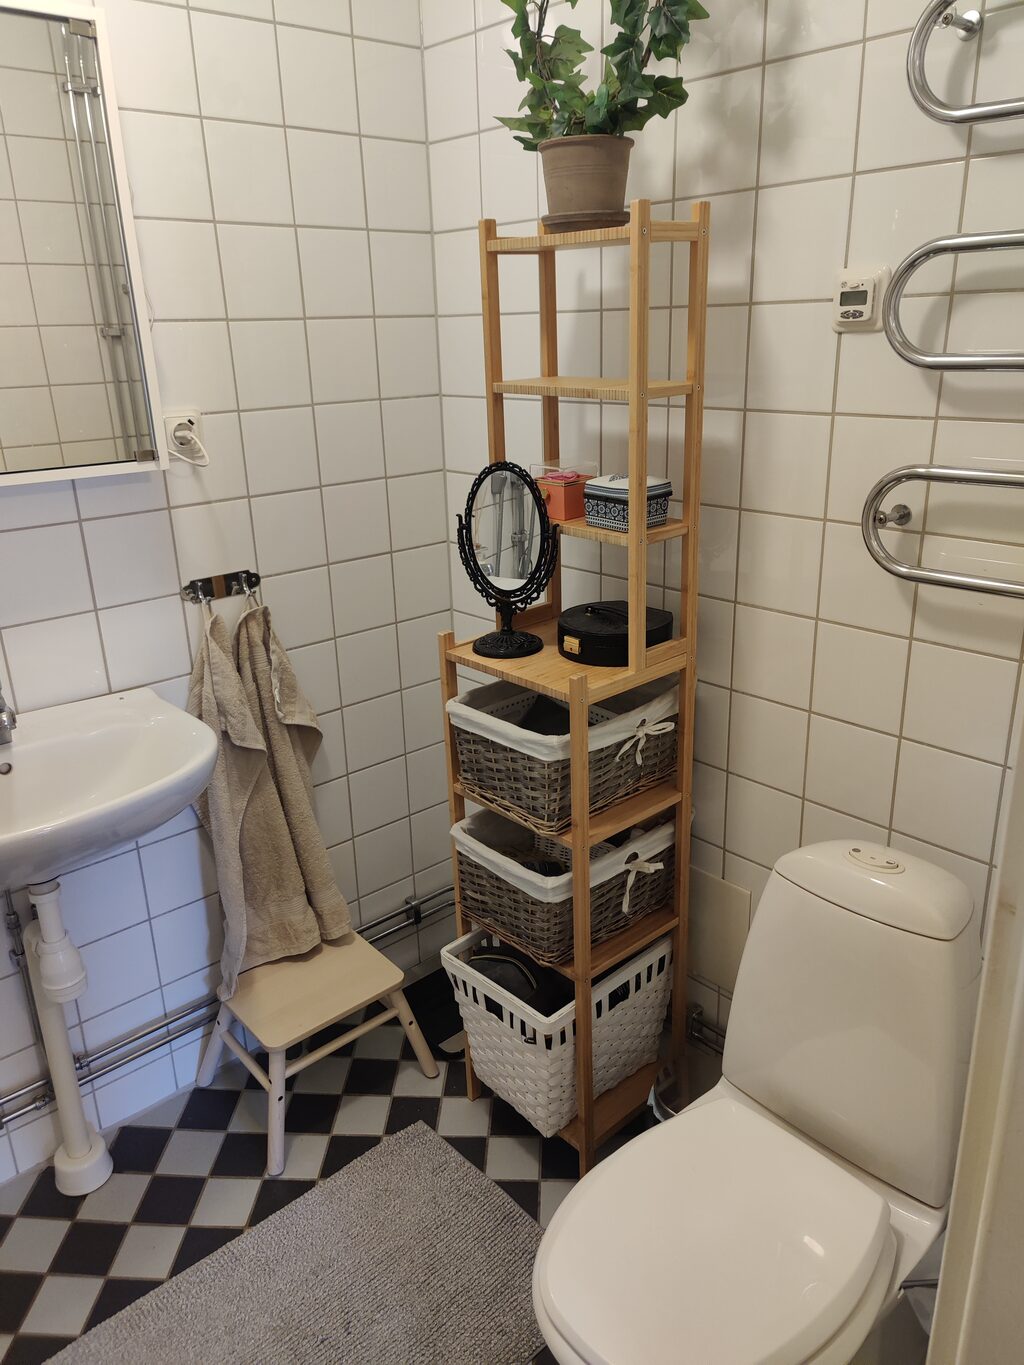 Lägenhetsbyte - Kungsportsavenyen, 411 36 Göteborg